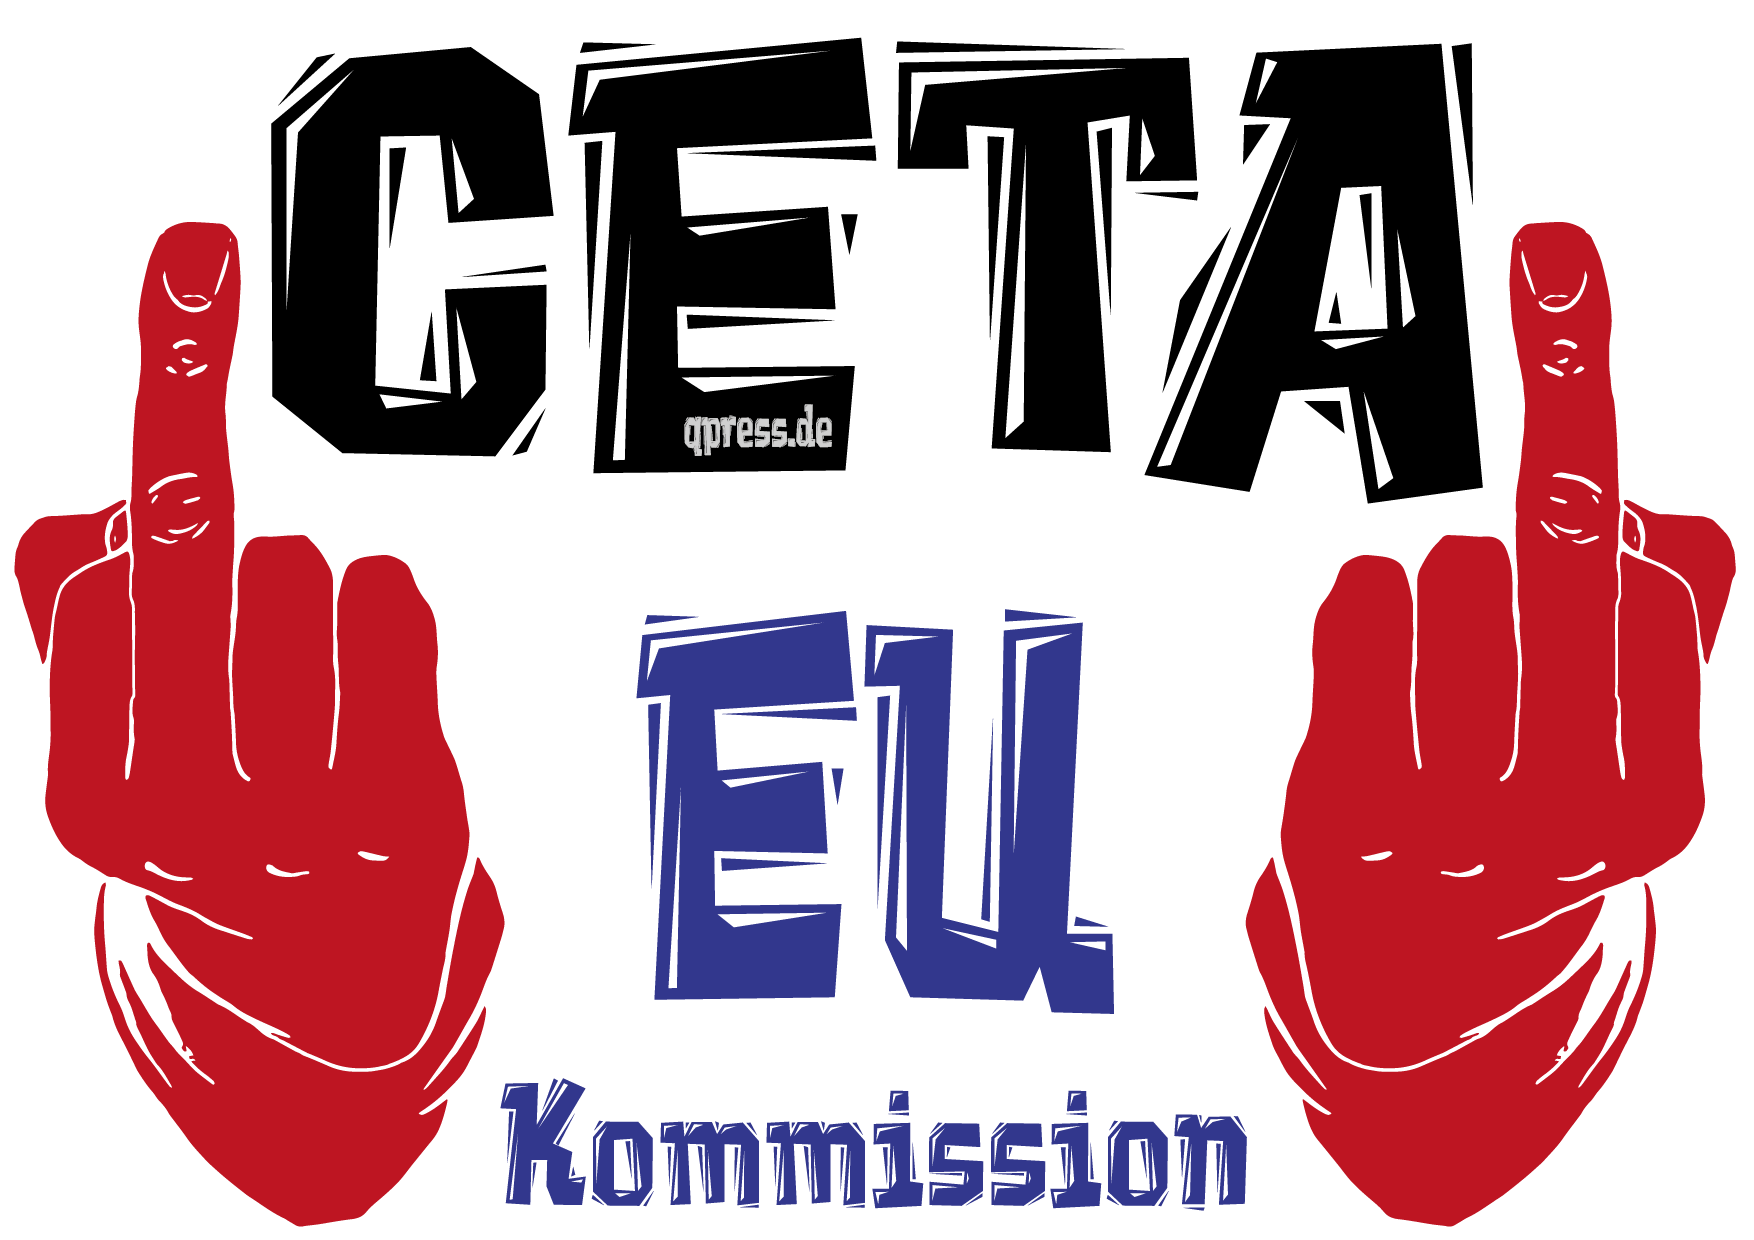 ceta_eu_kommission_handeslsabkommen_comprehensive_economic_and_trade_agreement_kritisches_netzwerk_freihandelsabkommen_ttip_canada_kanada_european_union